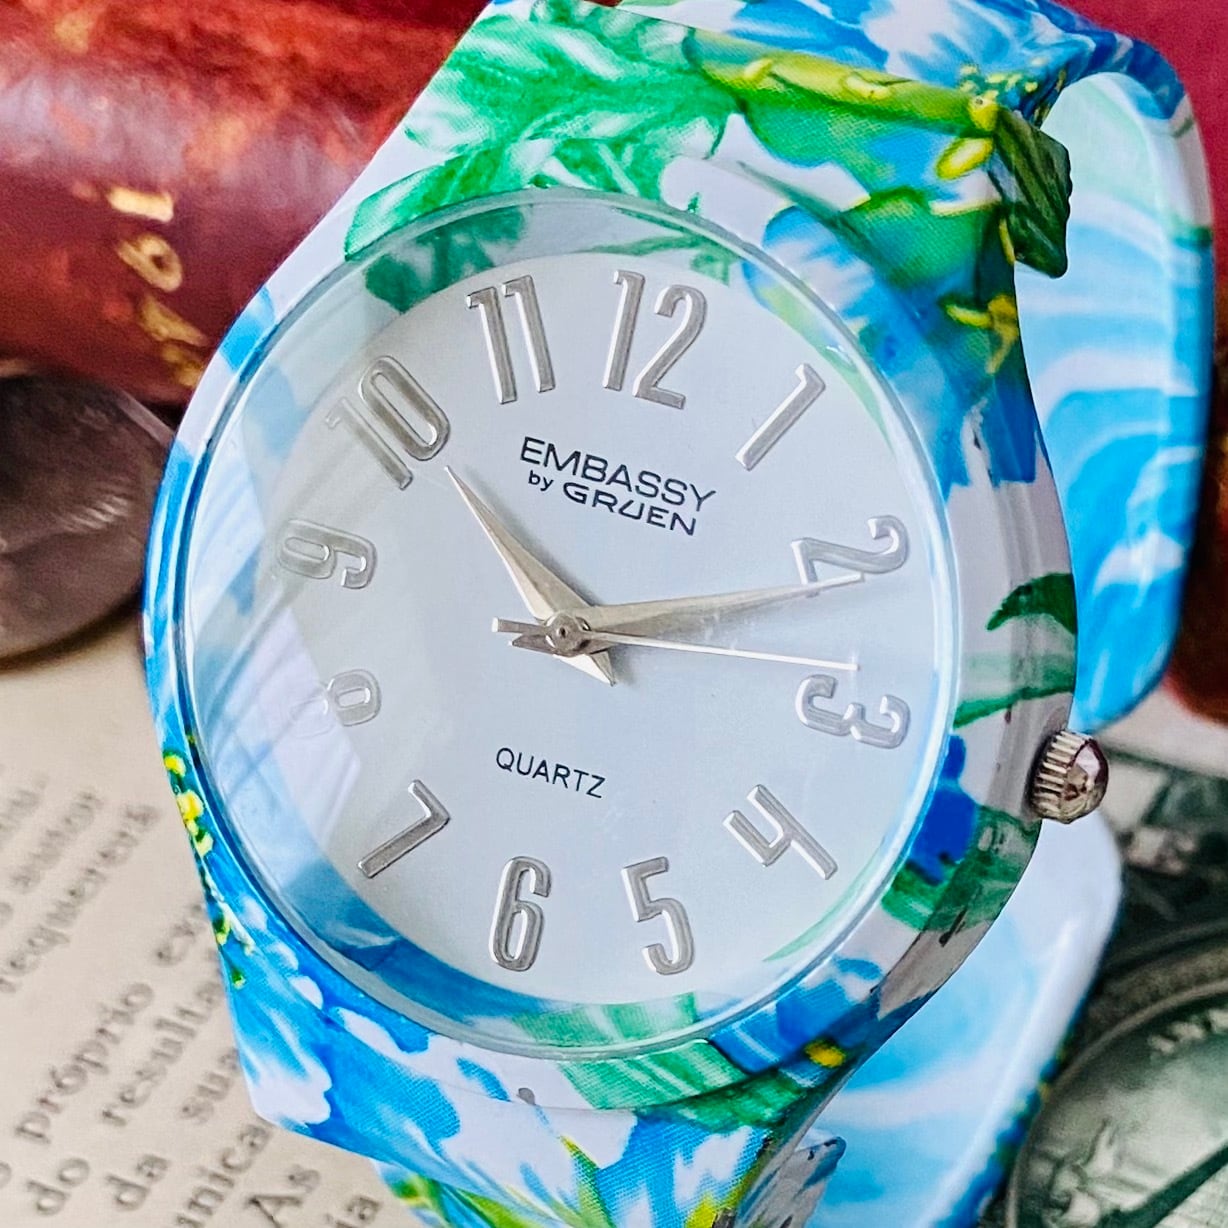 レオウォッチ【高級時計グリュエン】Embassy by Gruen クォーツ 腕時計